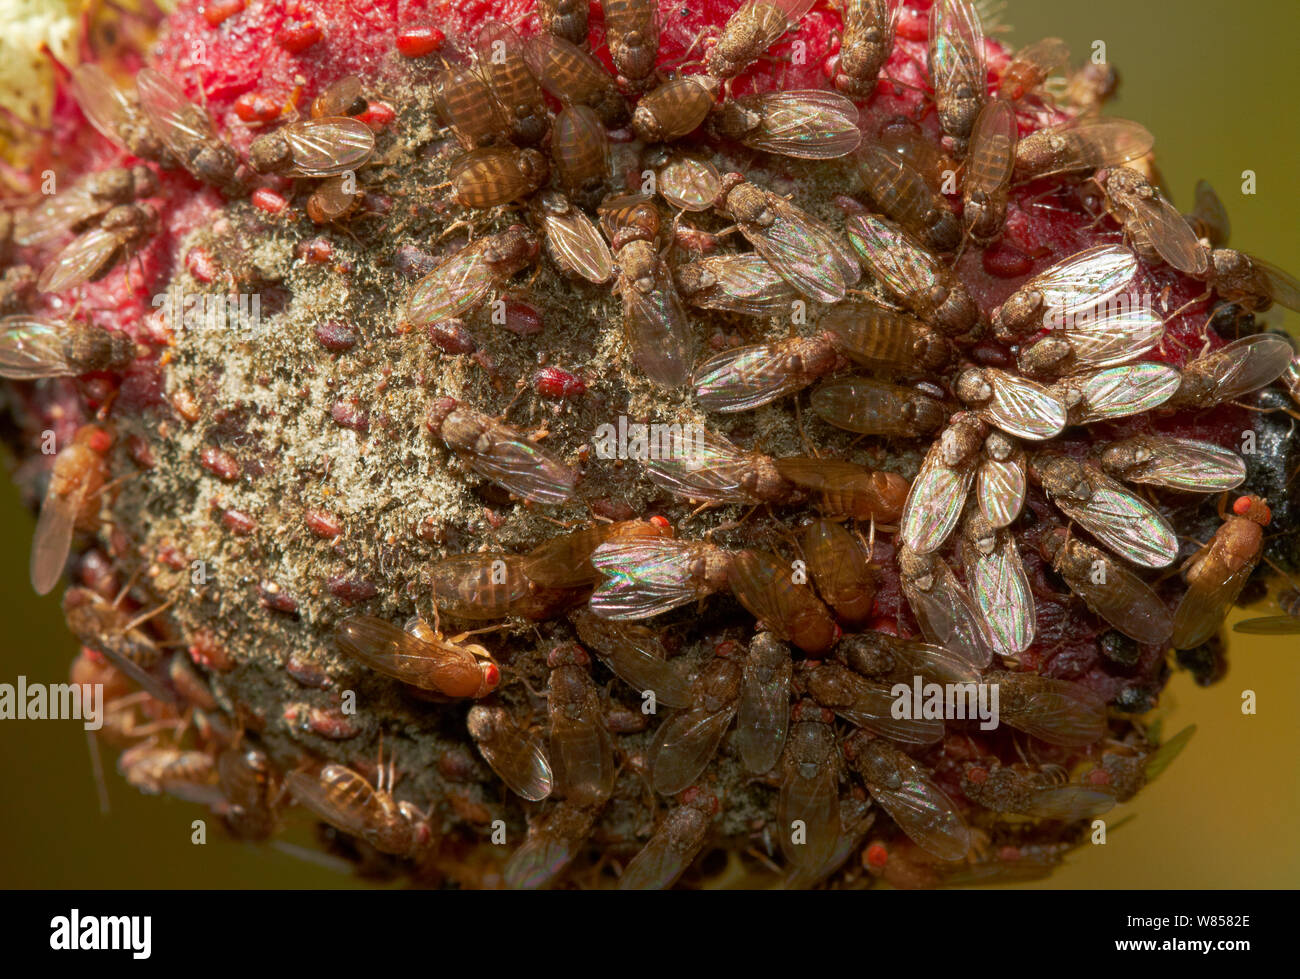 Mosca della frutta (Drosophila melanogaster) sul marciume fragola, Inghilterra, Regno Unito, Agosto Foto Stock